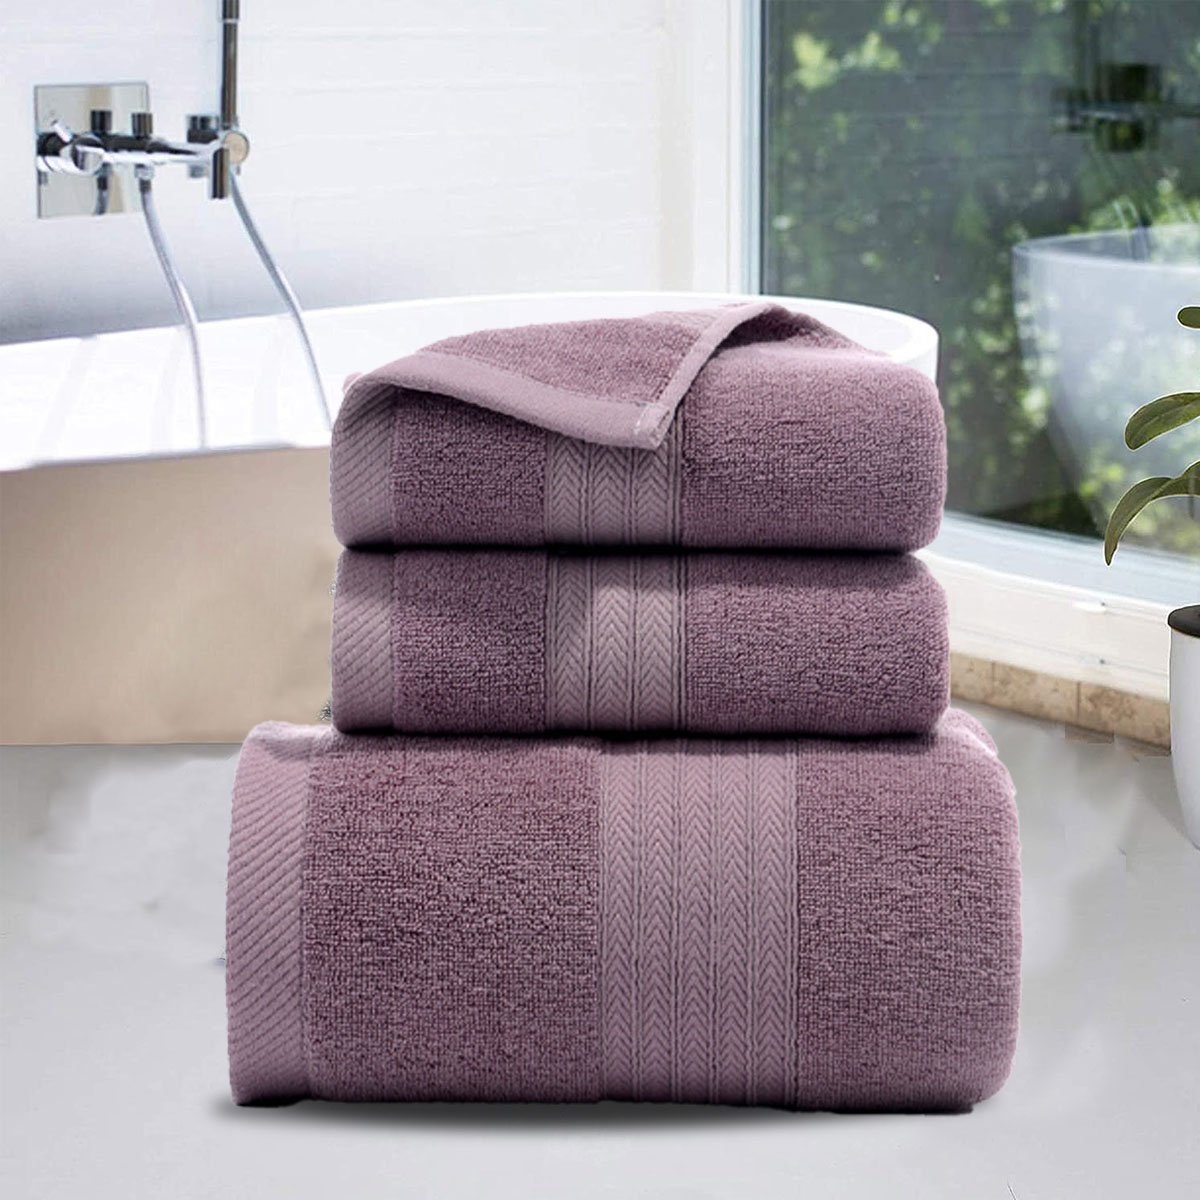 Handtuch Handtücher weich,für zu Jormftte Set und Hause Set-2xHandtuch,1xBadetuch,saugfähig Violett